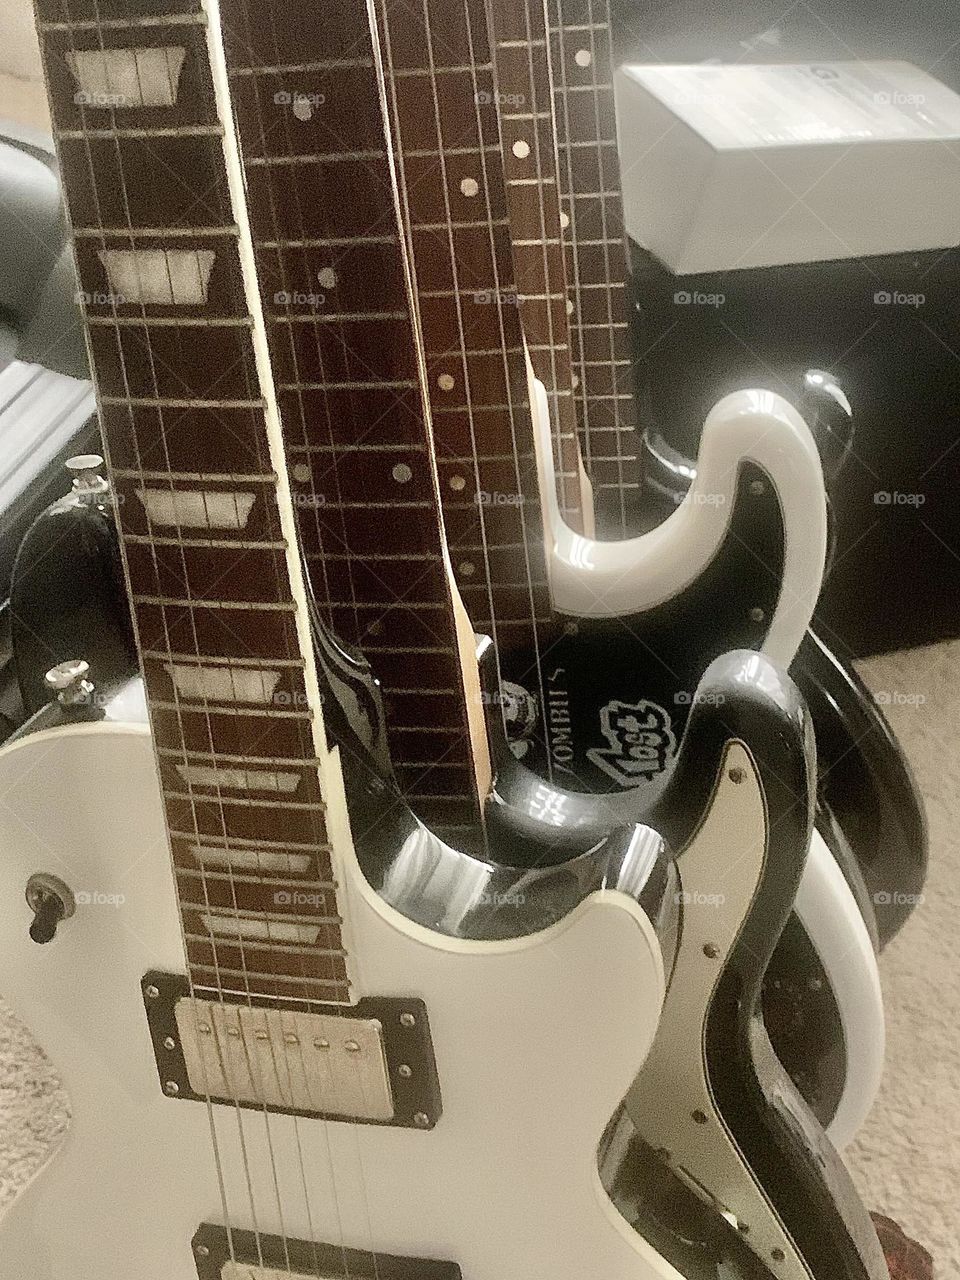 Guitars guitars guitars 